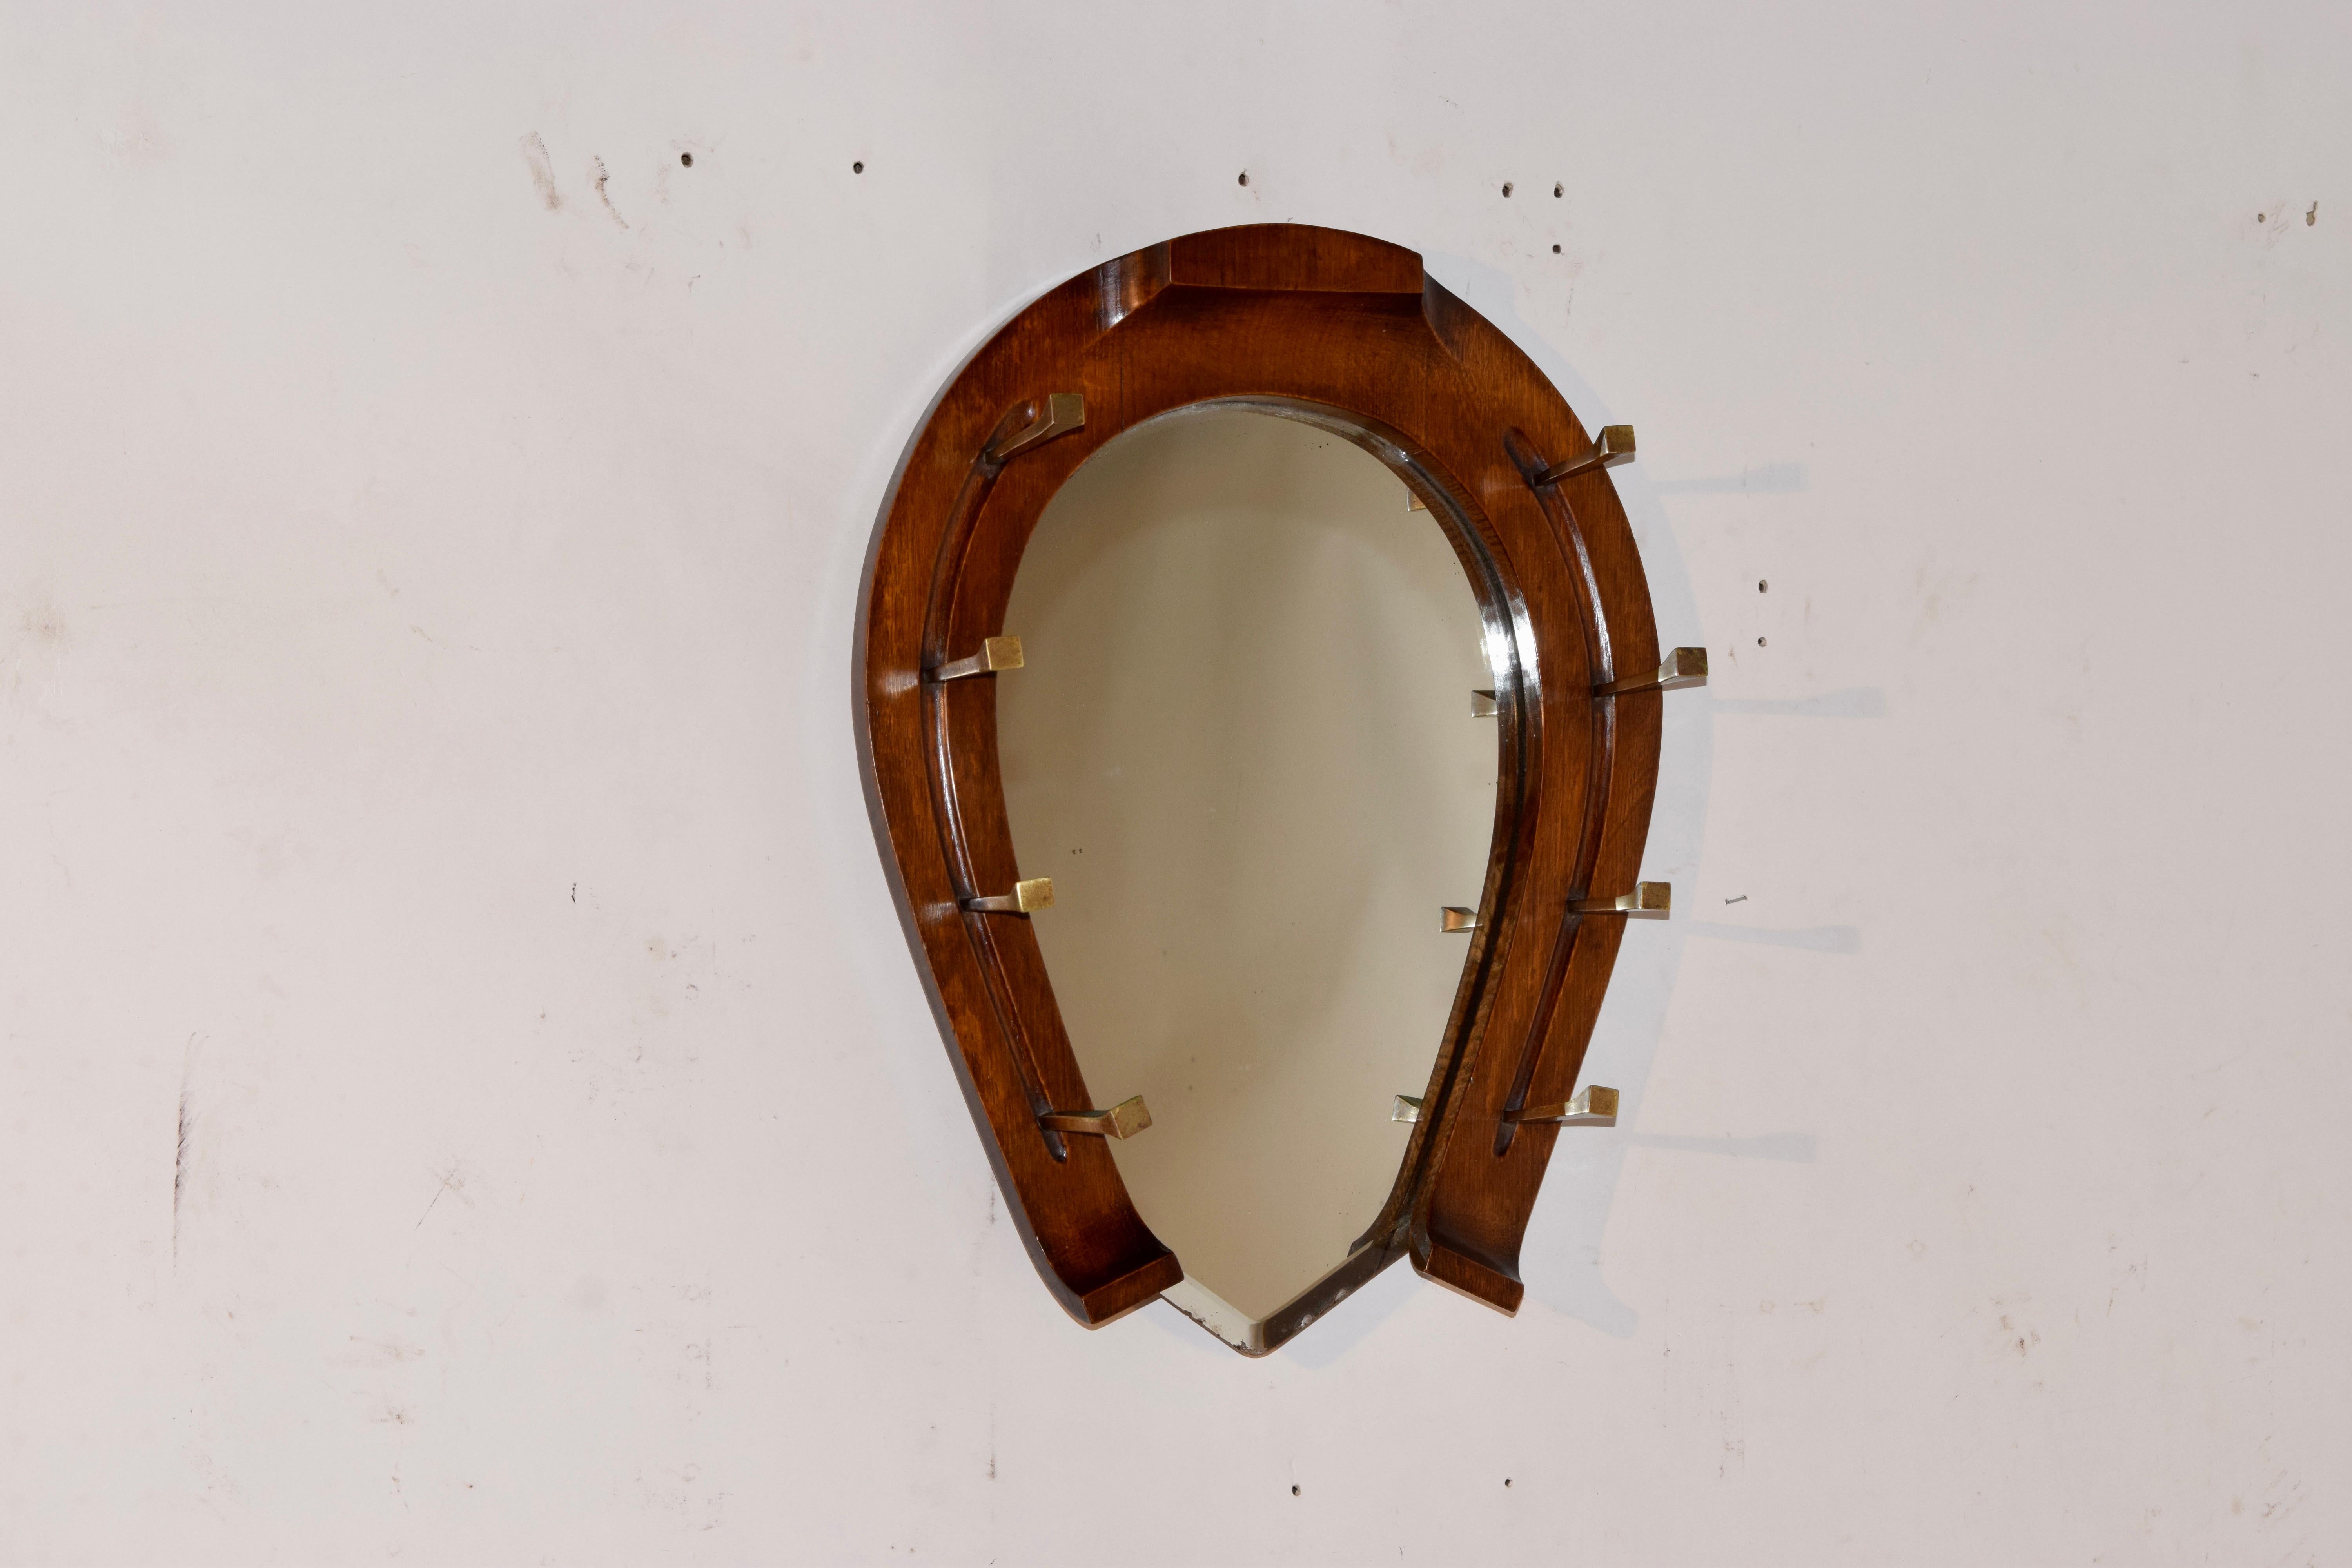 Miroir en chêne anglais en forme de fer à cheval avec porte-chapeaux en laiton moulé à la main en forme de clous de fer à cheval. Une marque d'enregistrement en laiton sur le dessus du fer à cheval date la fabrication de la pièce du 11 mai 1878. Le